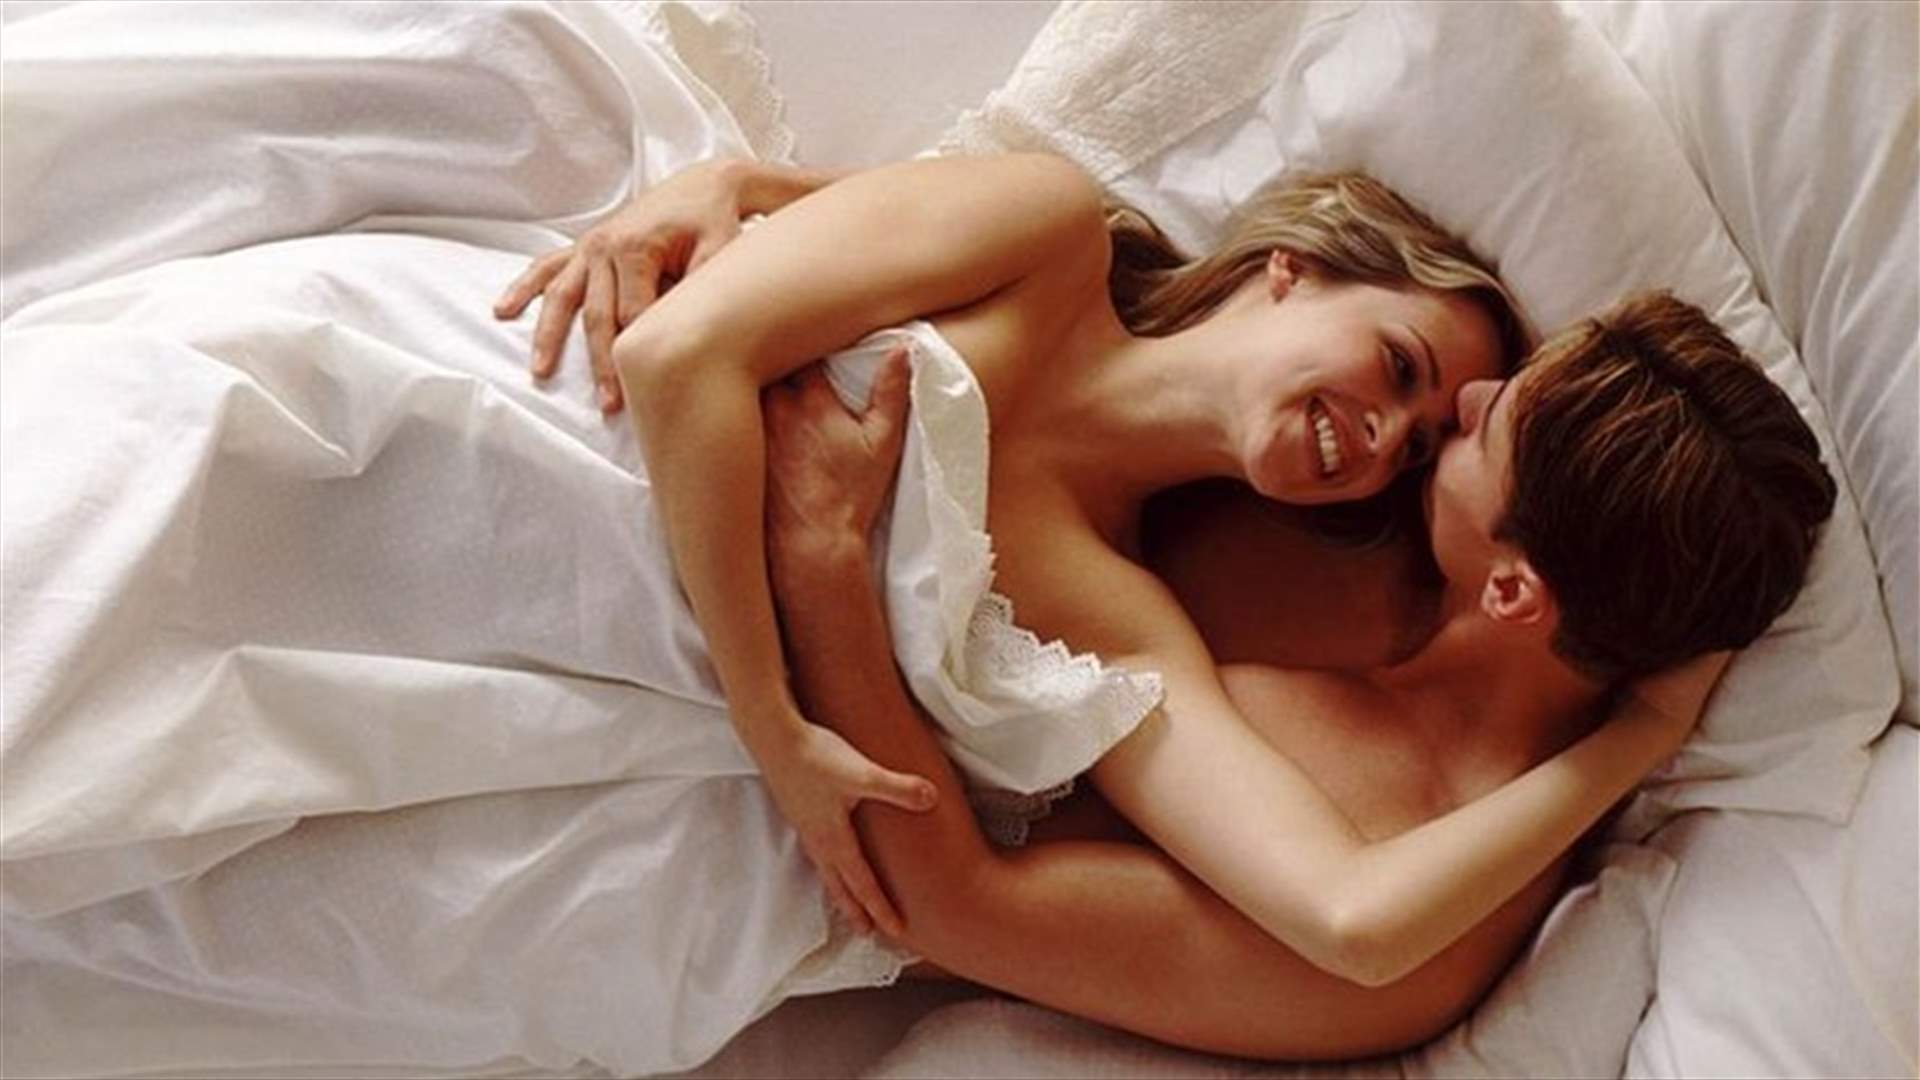 هل تُحقق كثرة ممارسة الجنس السعادة الزوجيّة؟